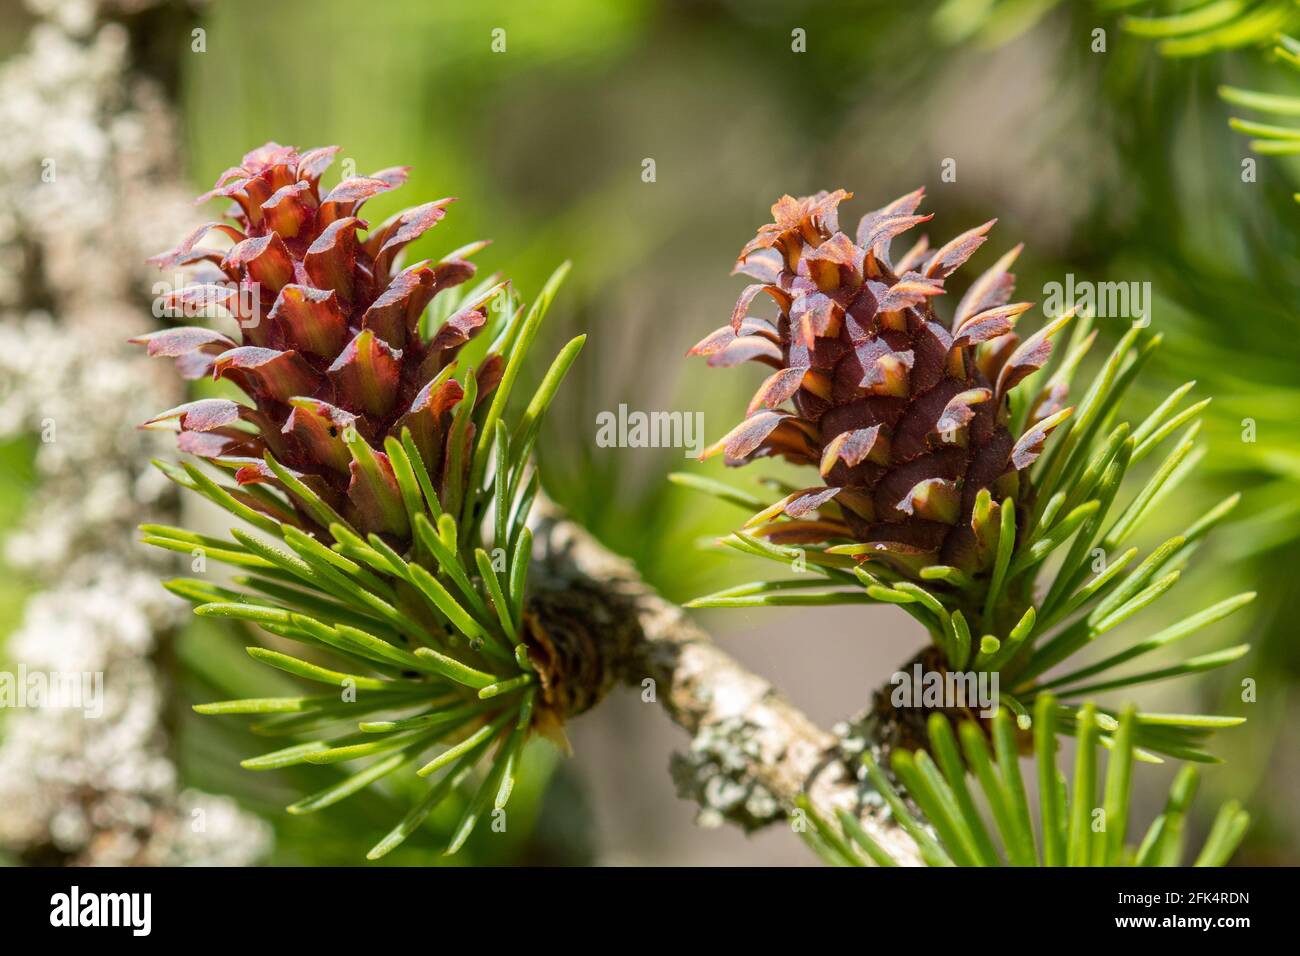 European larch (Larix decidua) tree, close-up of the pink cones during April, UK Stock Photo